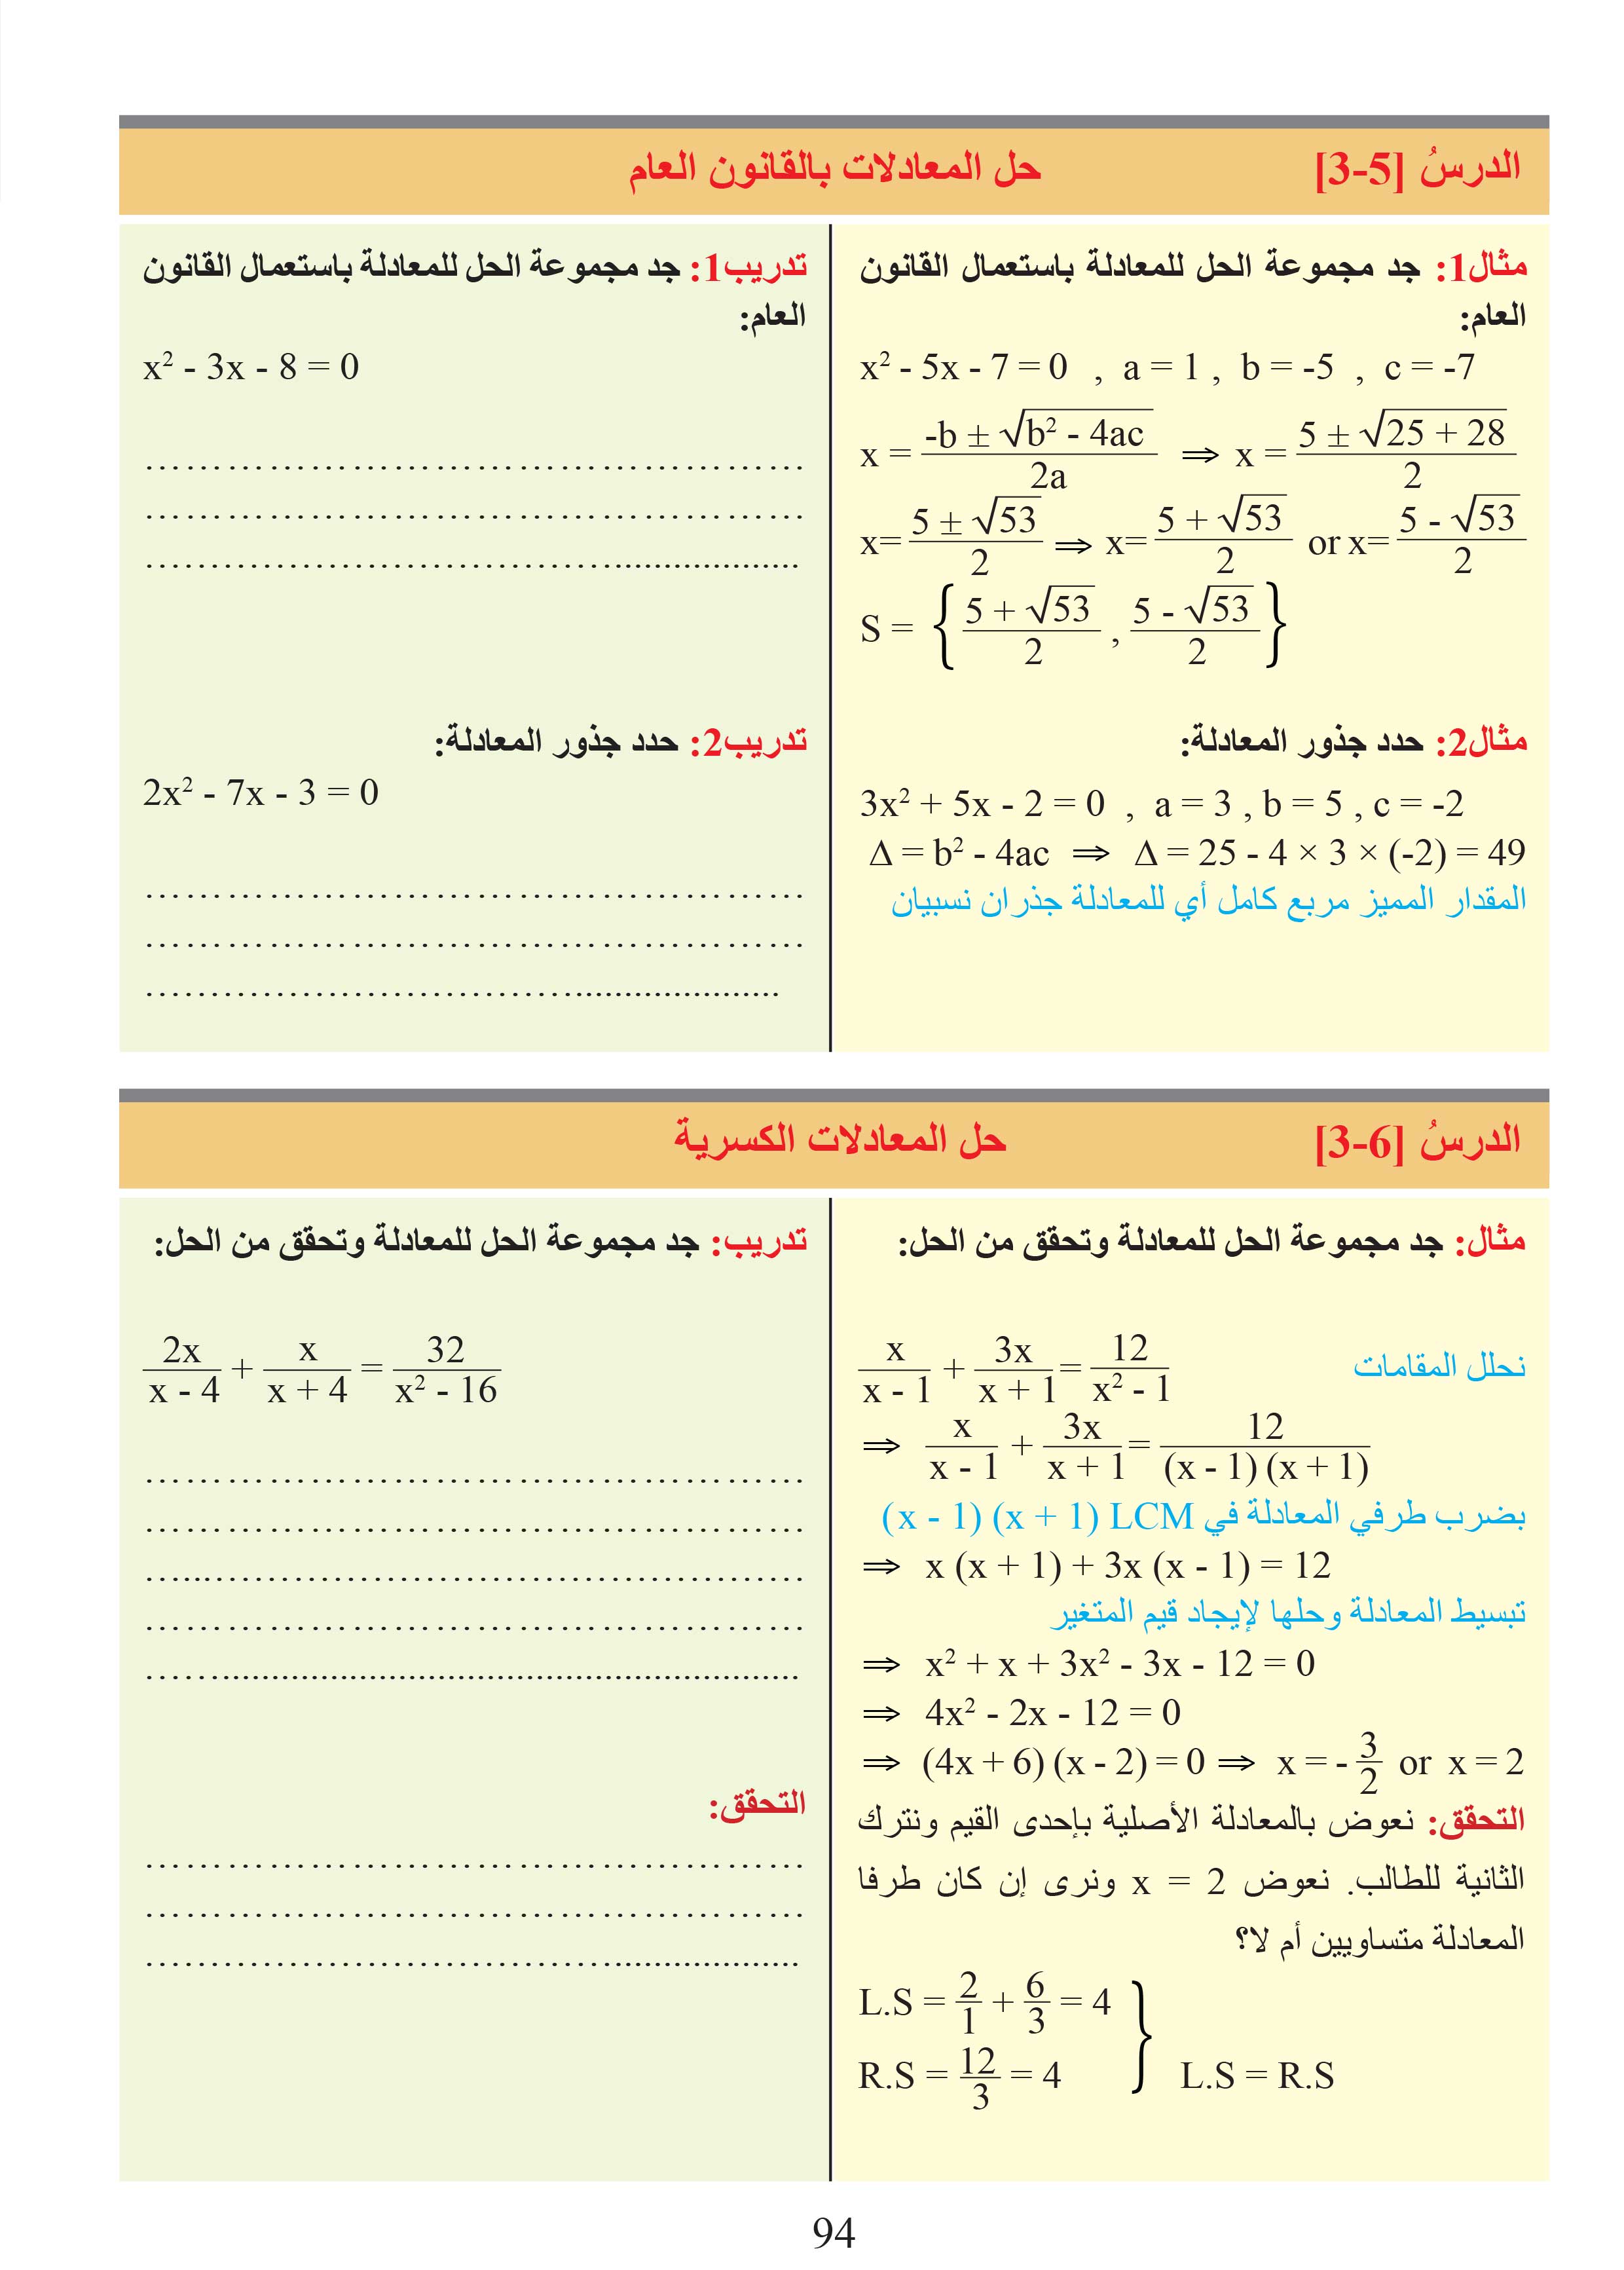 الدرس7-3: خطة حل المسألة (كتابة معادلة)